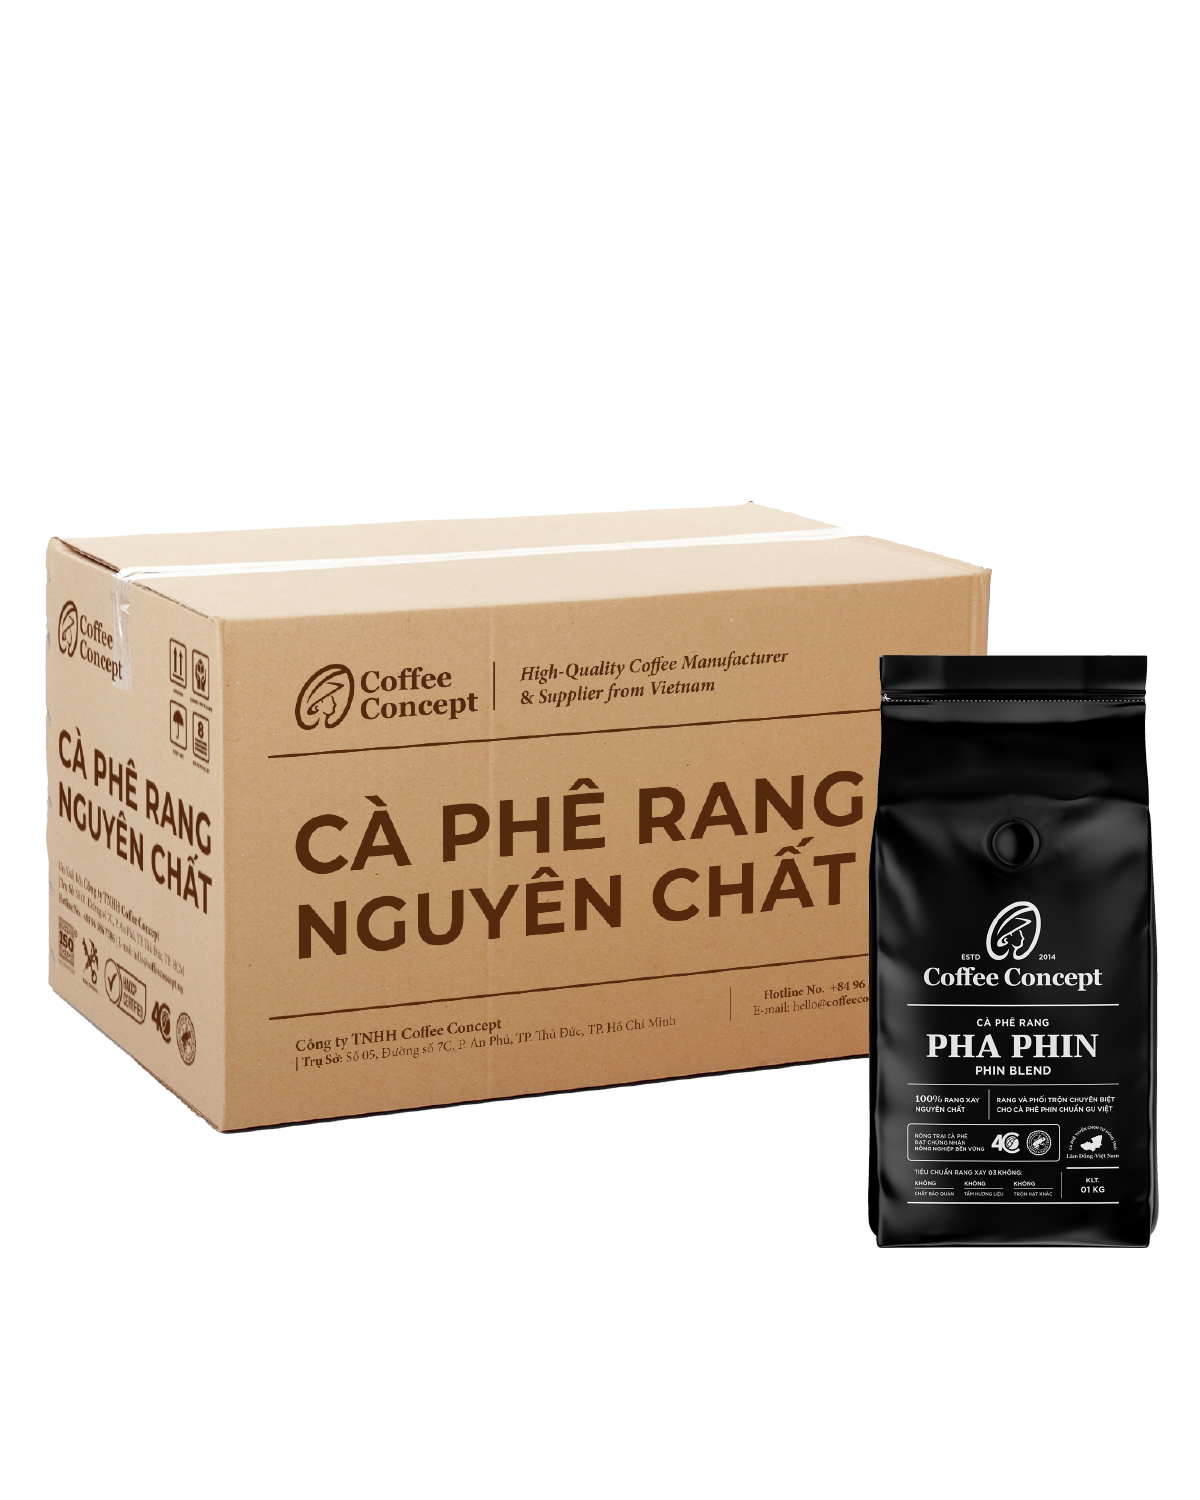  Cà phê rang PHA PHIN gói 1000G (dùng cho kinh doanh) - Thùng 12 gói 